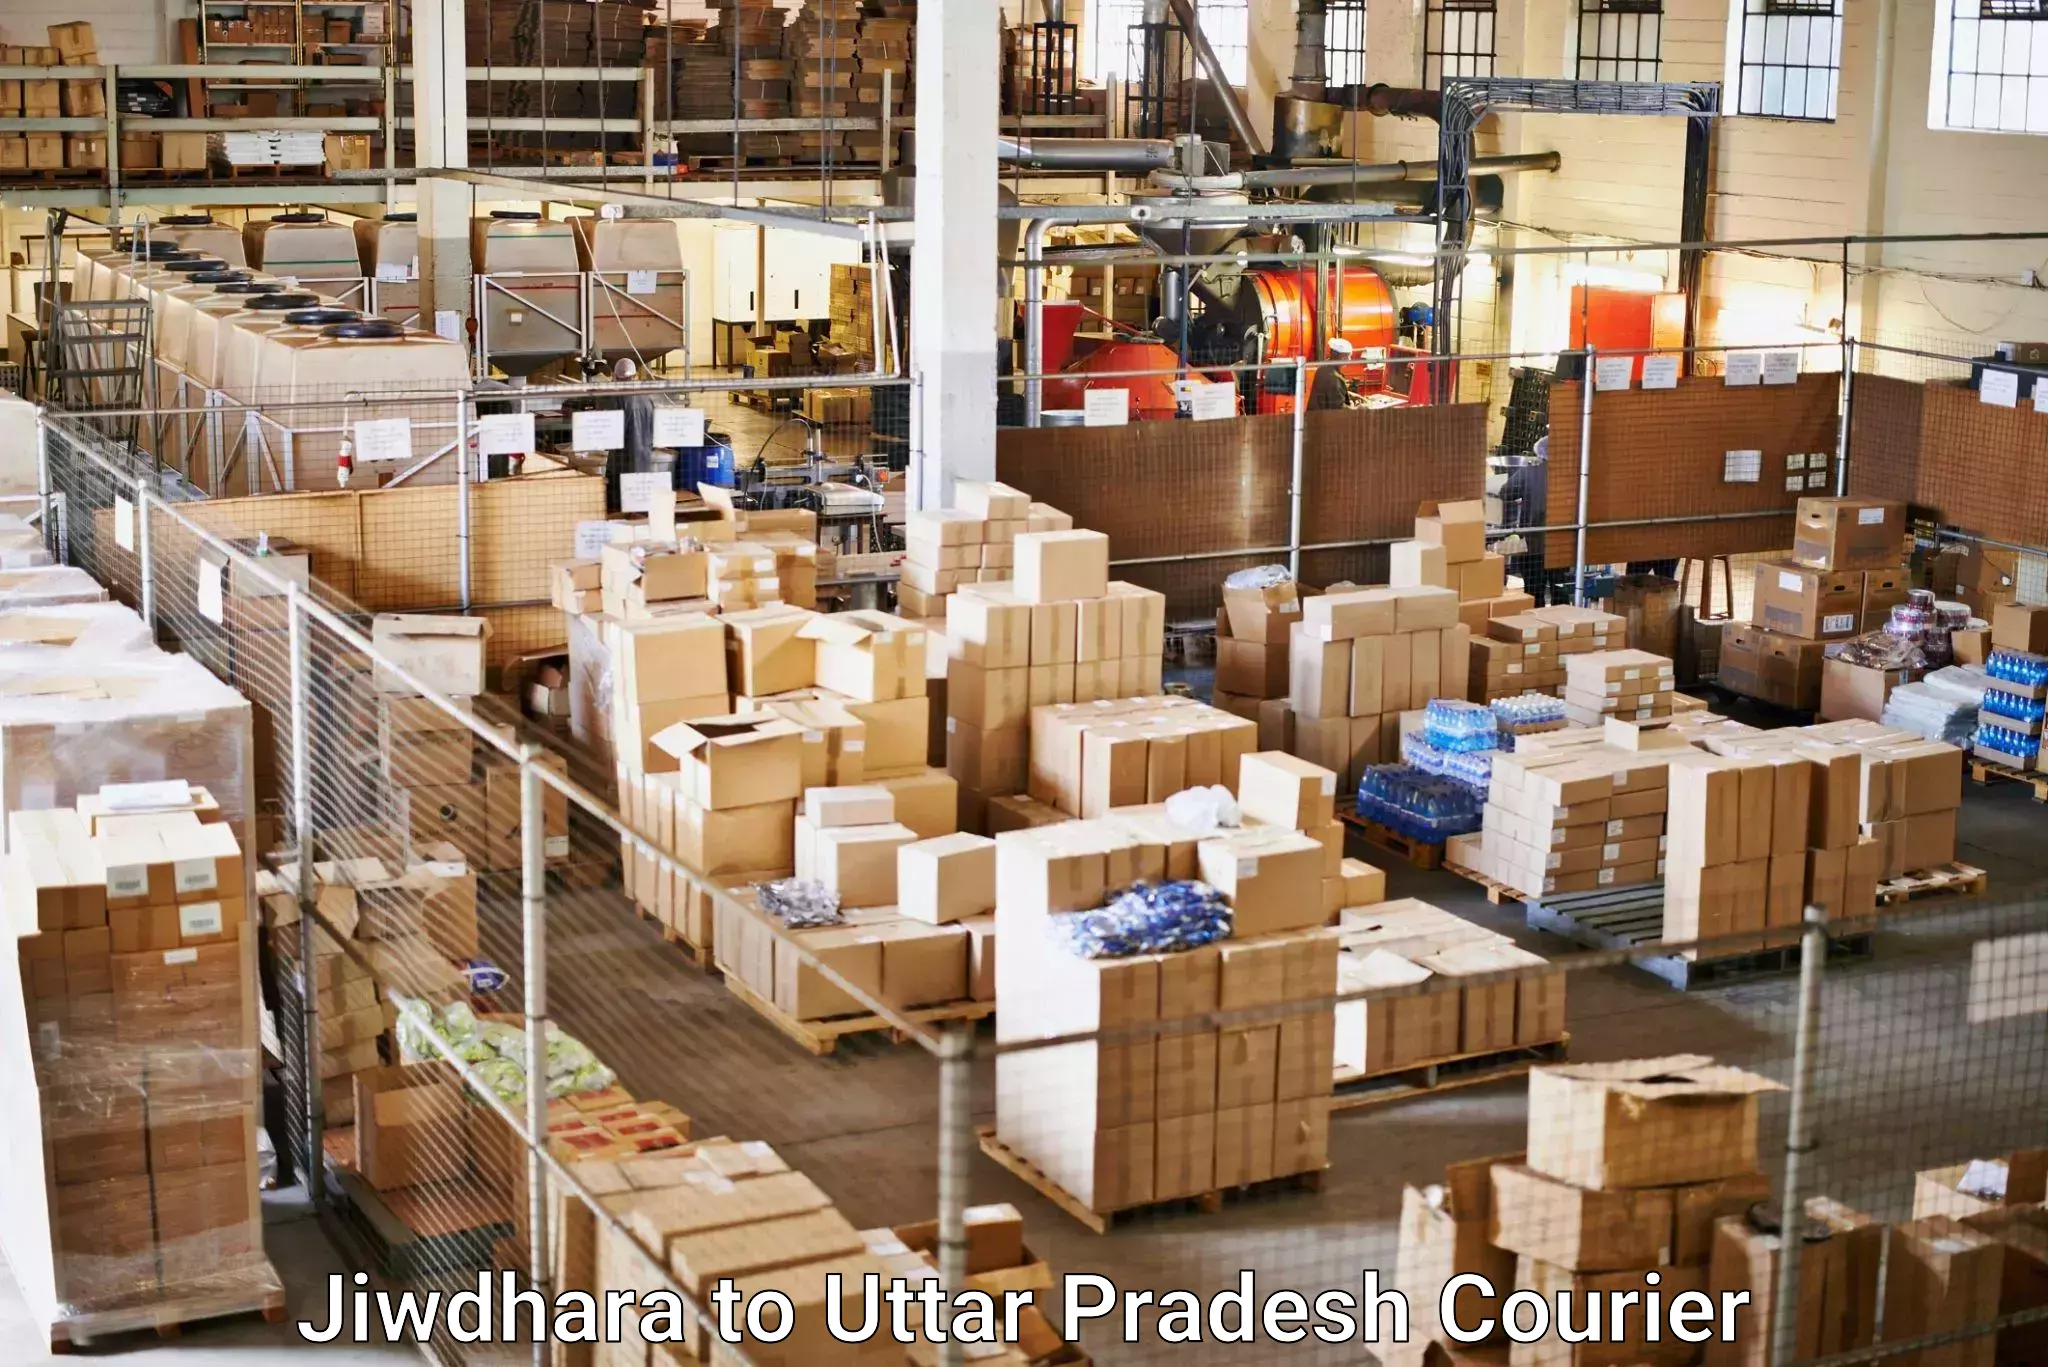 High-capacity parcel service Jiwdhara to Gorakhpur